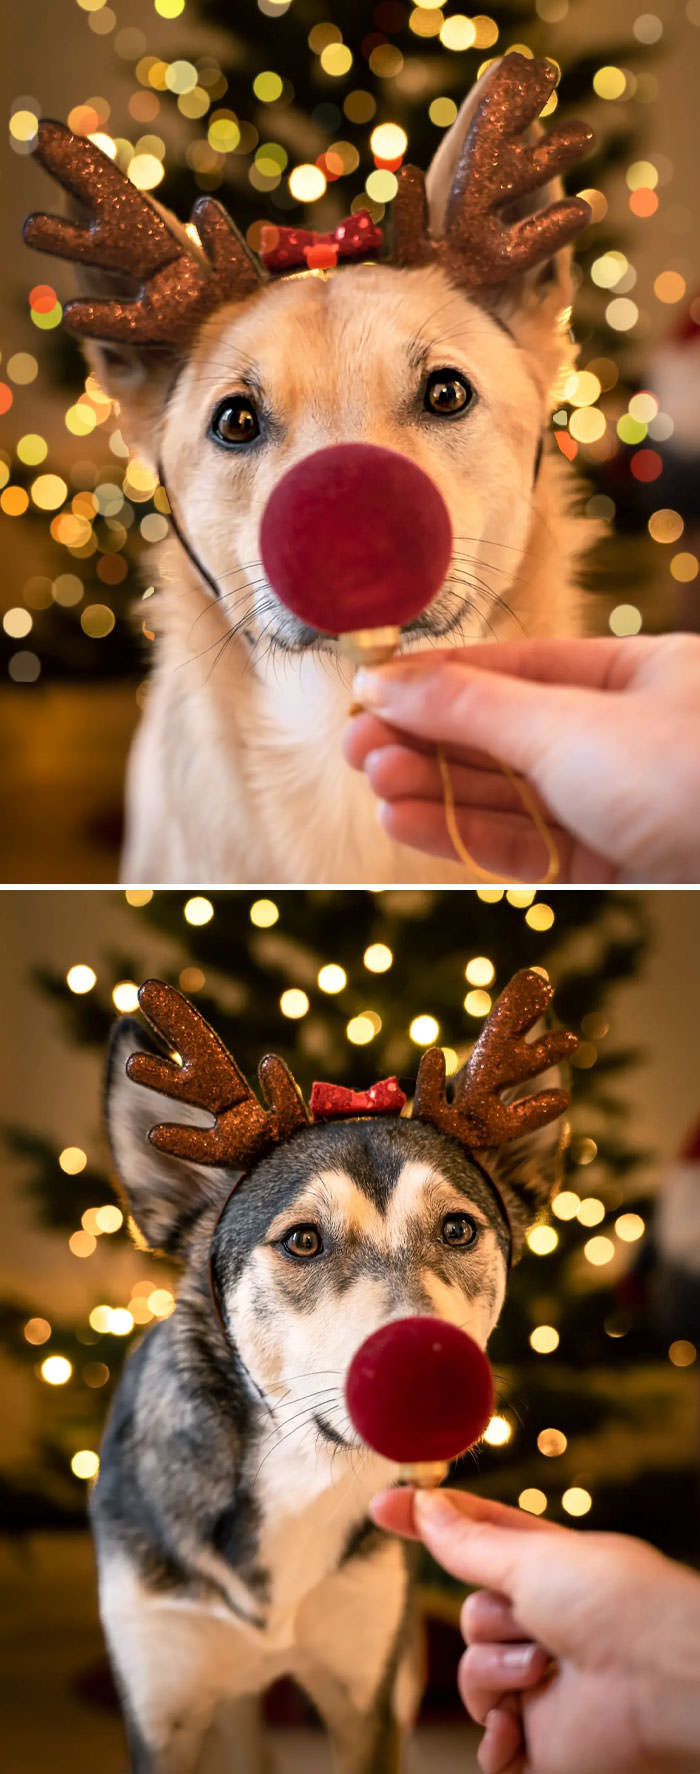 It's Sarek the red-nosed reindeer.